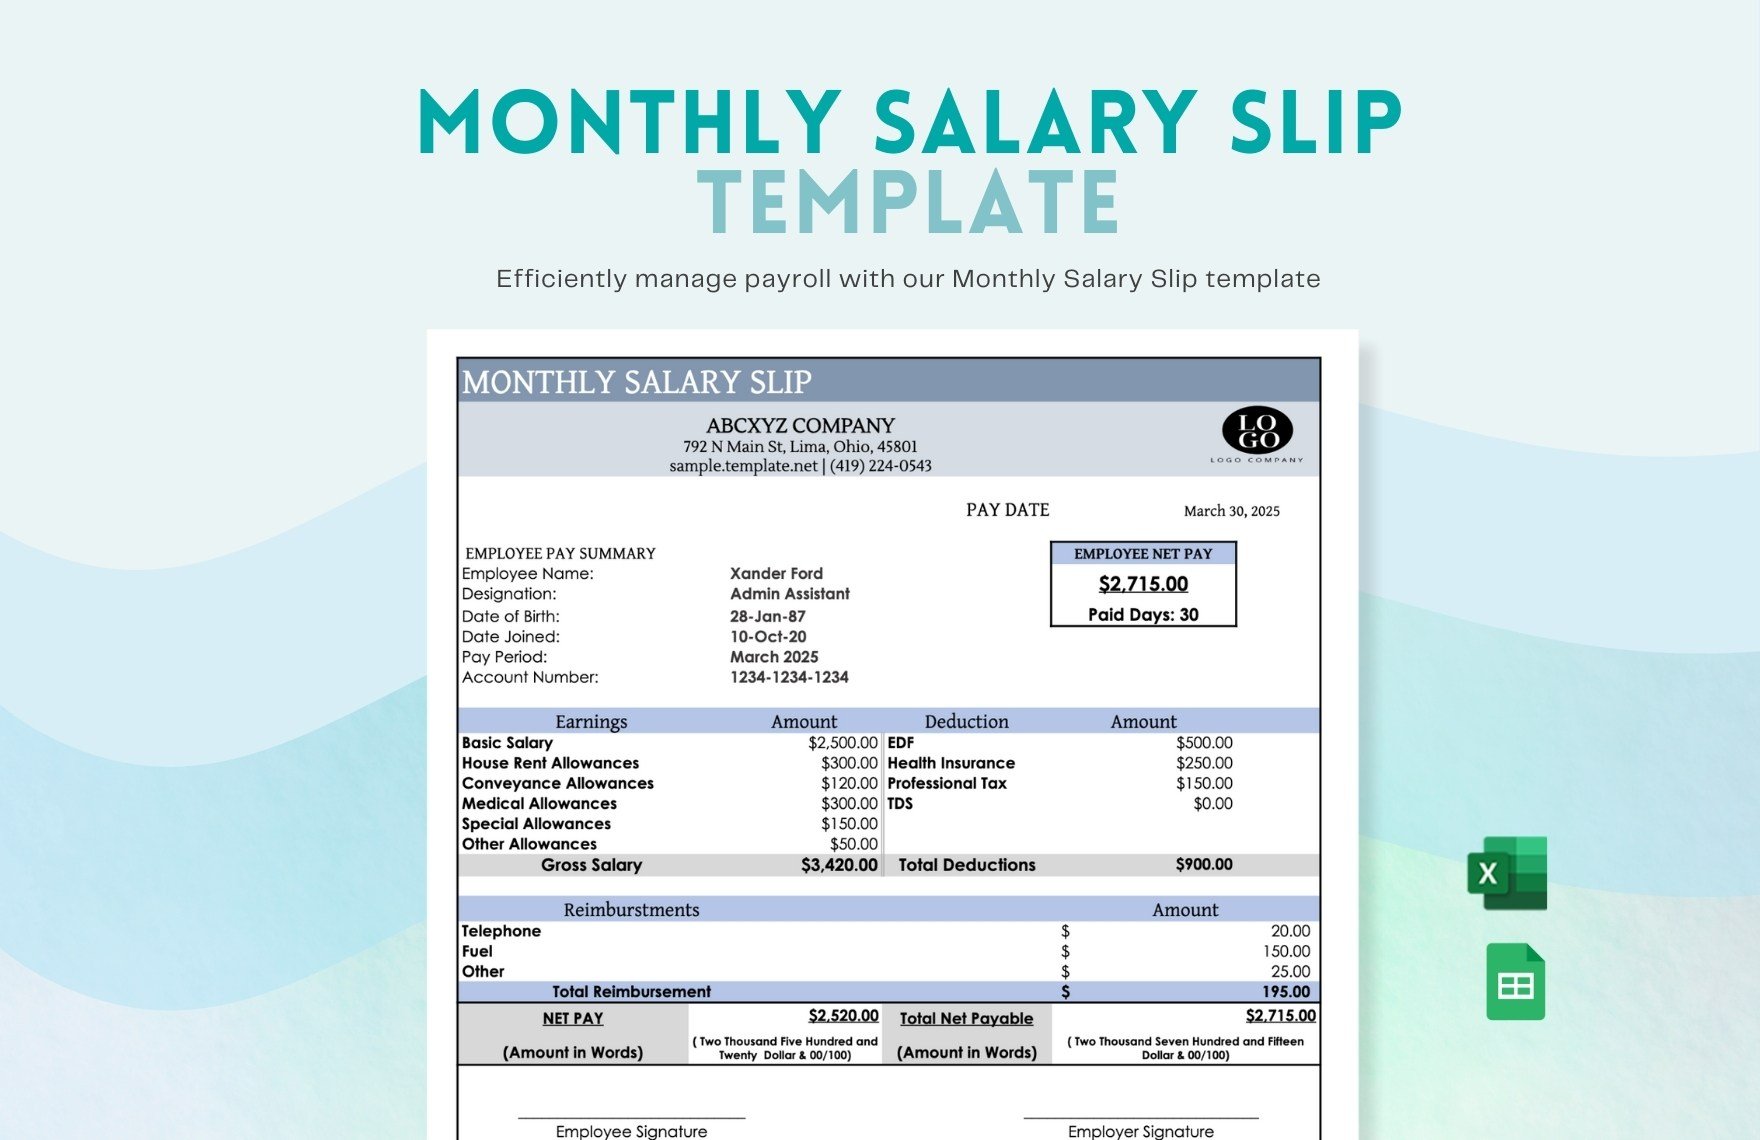 Monthly Salary Slip